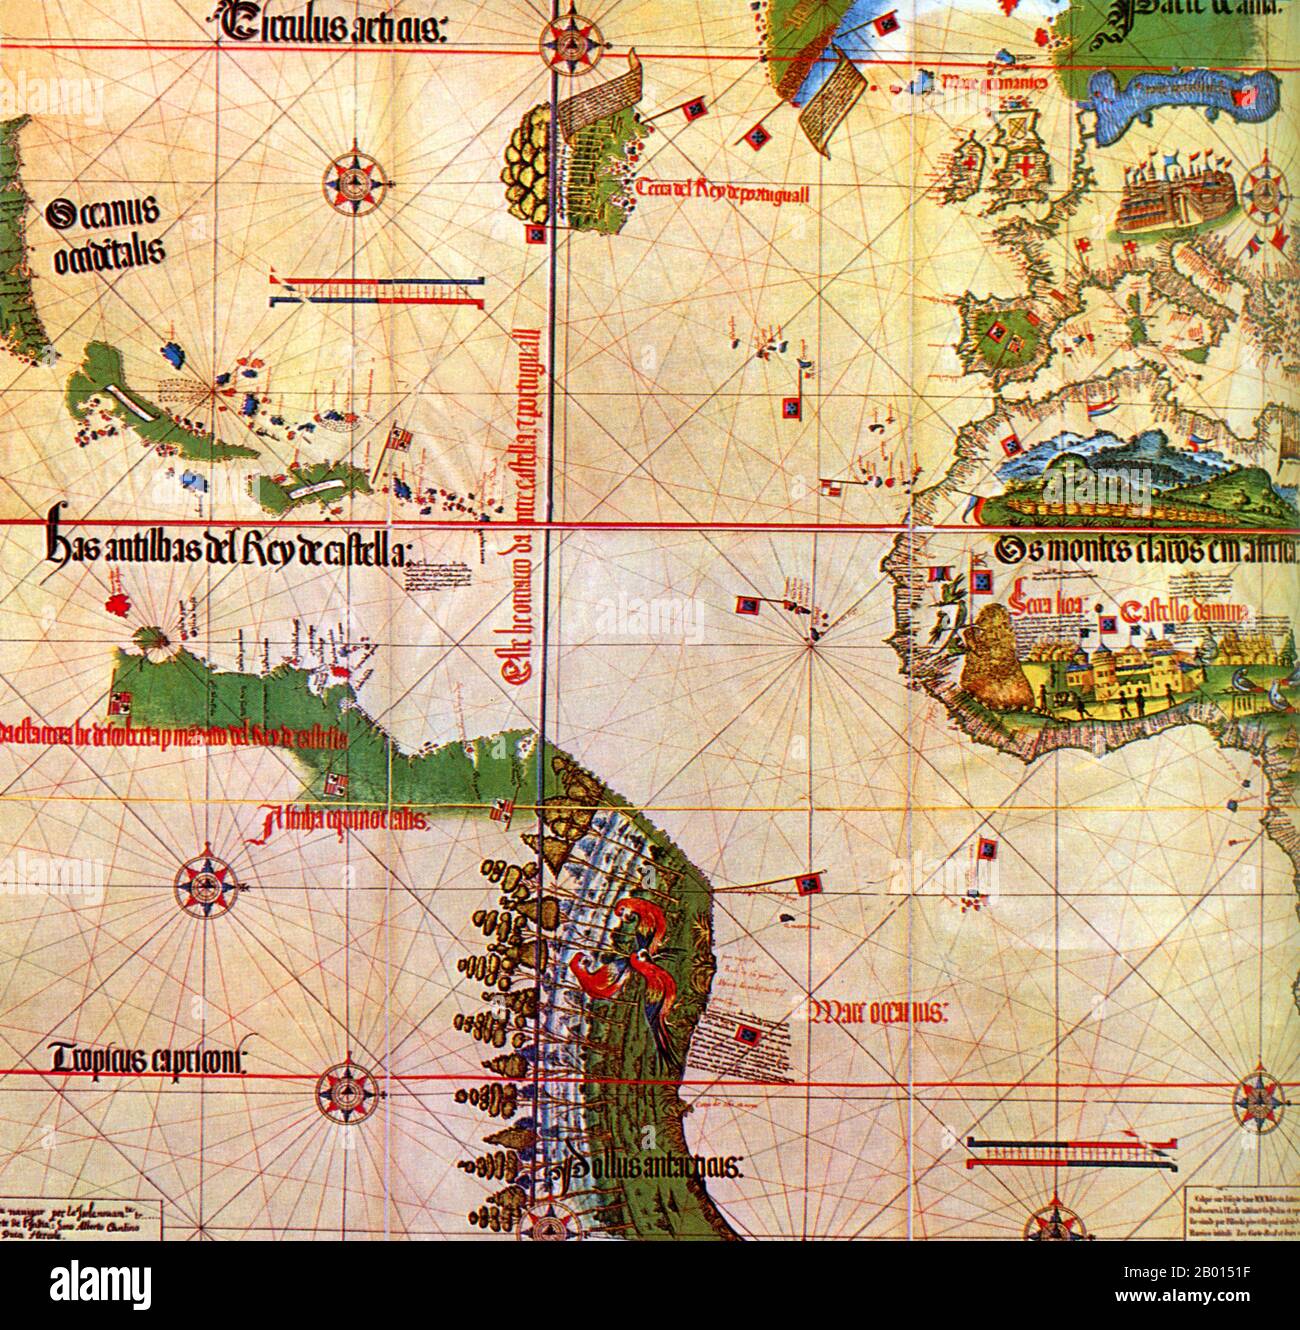 Espagne/Portugal: Alberto Cantino (fl. 15ème-16ème siècle) carte de 1502 montre la ligne méridienne dans l'Atlantique qui délimite le territoire espagnol (à l'ouest de la ligne) des possessions portugaises (à l'est). Supervisé par le Pape Alexandre VI d'origine espagnole, le Traité de Tordesillas en 1494 divisa le monde en deux - en territoires espagnols et portugais. Suite au succès du navigateur portugais Vasco da Gama dans la découverte d'une route maritime autour de l'Afrique vers l'Inde en 1498, le roi Manuel I a demandé à Pedro Alvares Cabral de conduire un deuxième voyage de 13 navires et 1,500 hommes en Inde. Banque D'Images